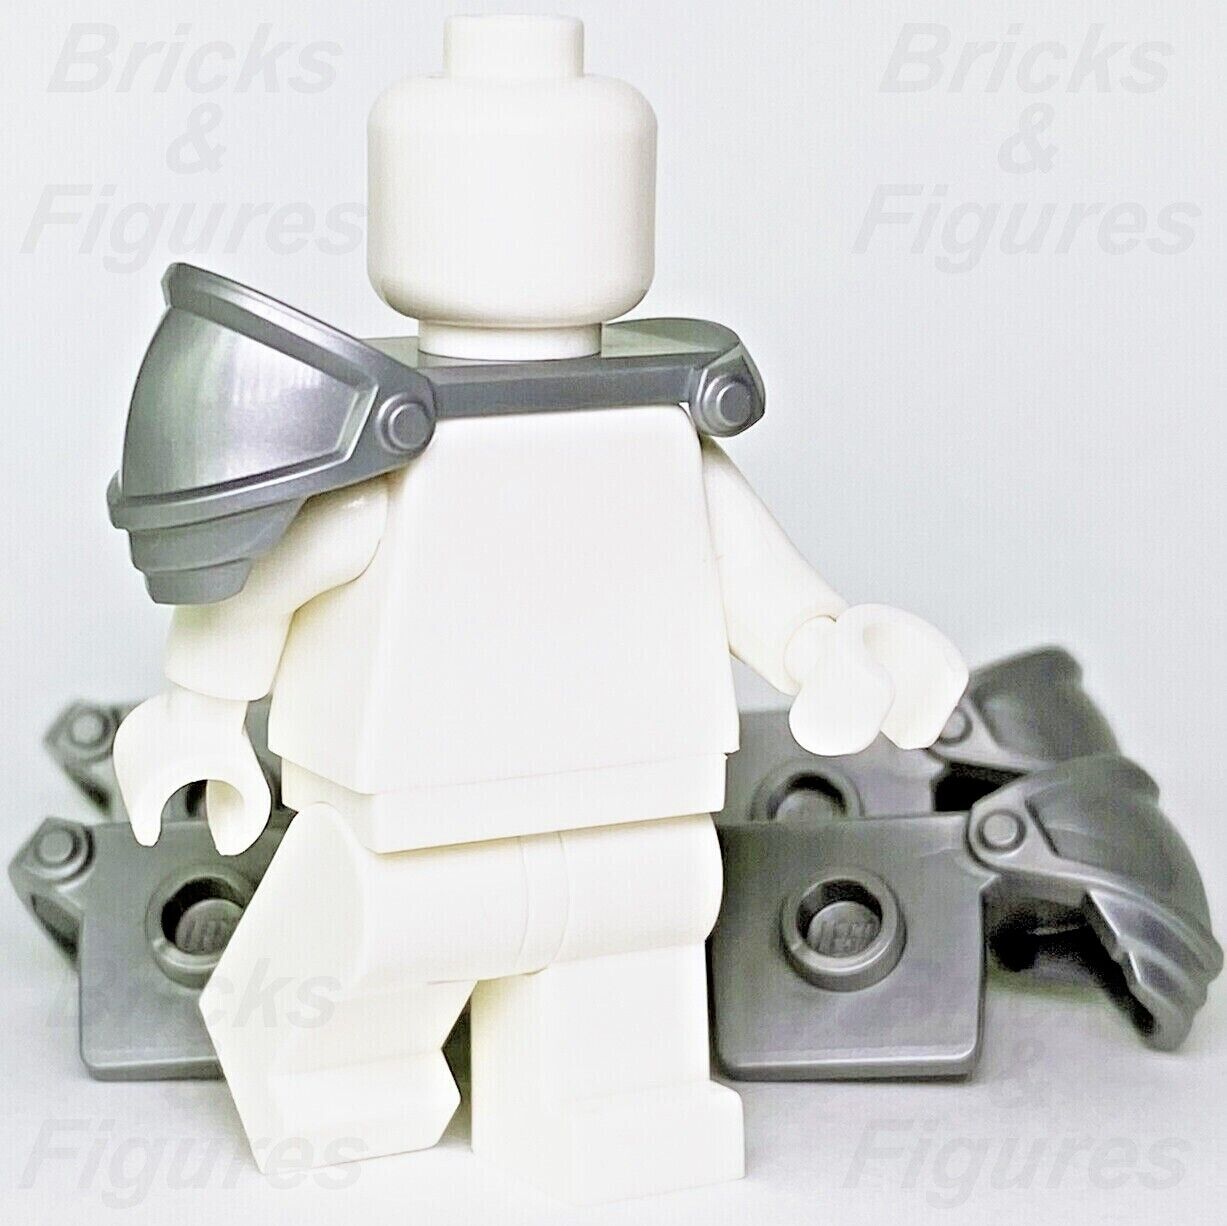 5 x LEGO Shoulder Armour Castle Knight Pauldron Armor Minifigure Part 65435 - Bricks & Figures